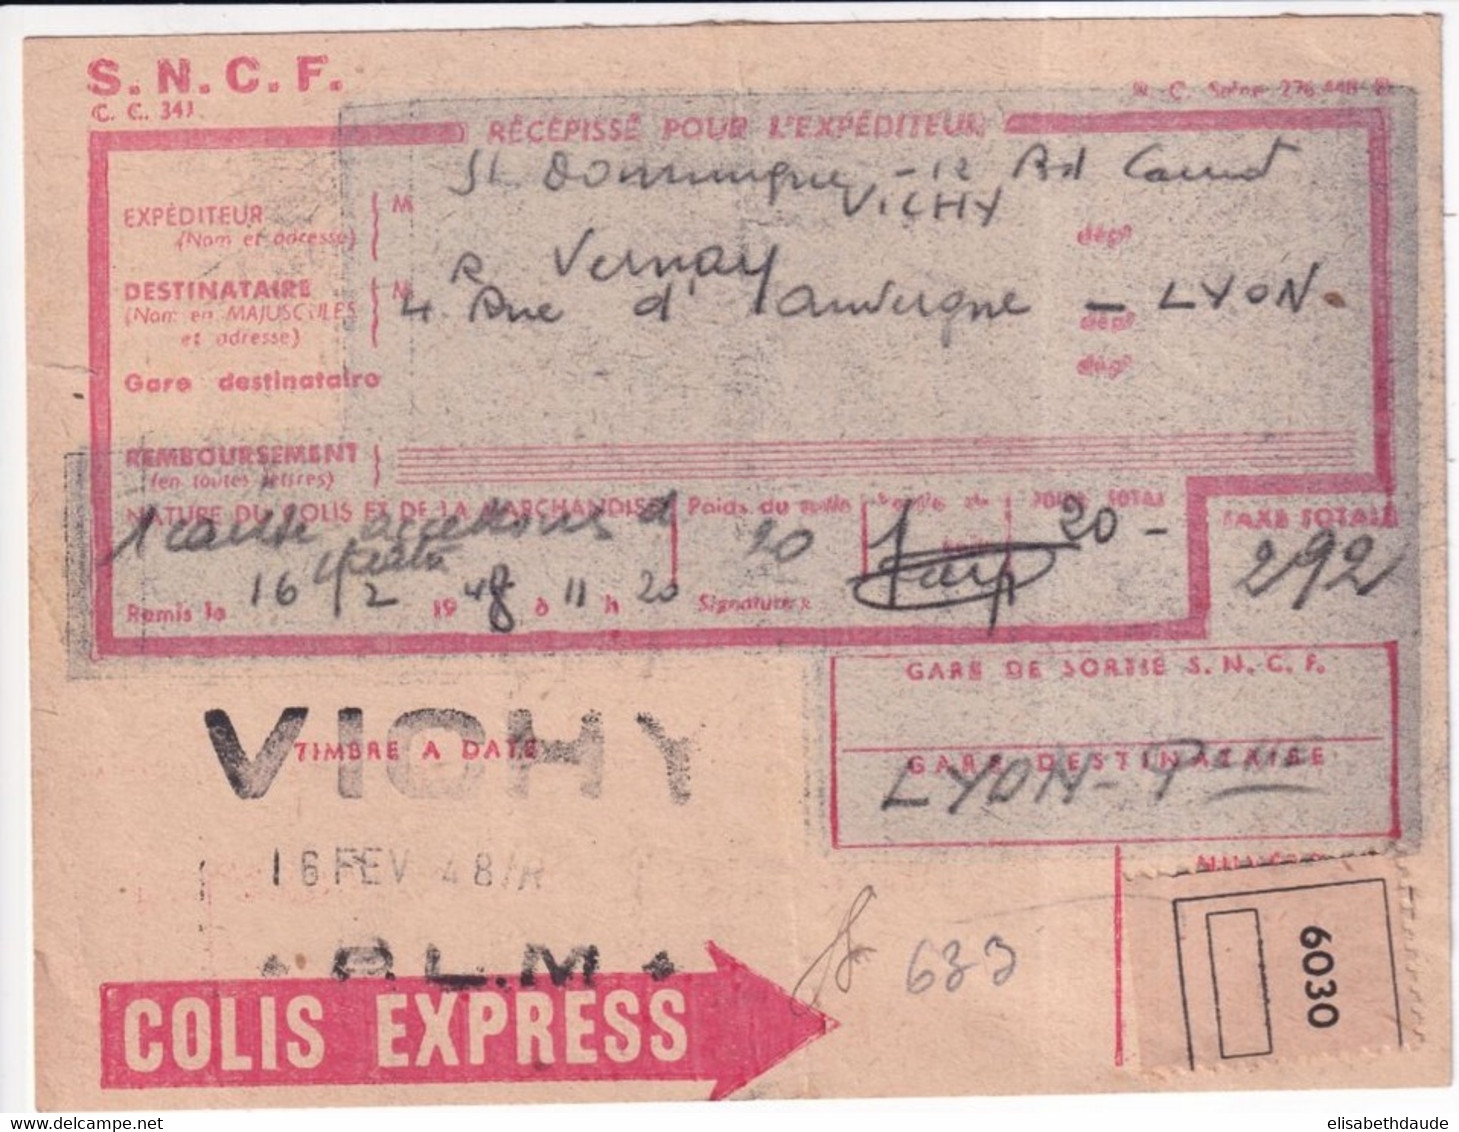 COLIS POSTAUX - 1948 - RECEPISSE COLIS EXPRESS ! De VICHY (ALLIER) => LYON - Brieven & Documenten